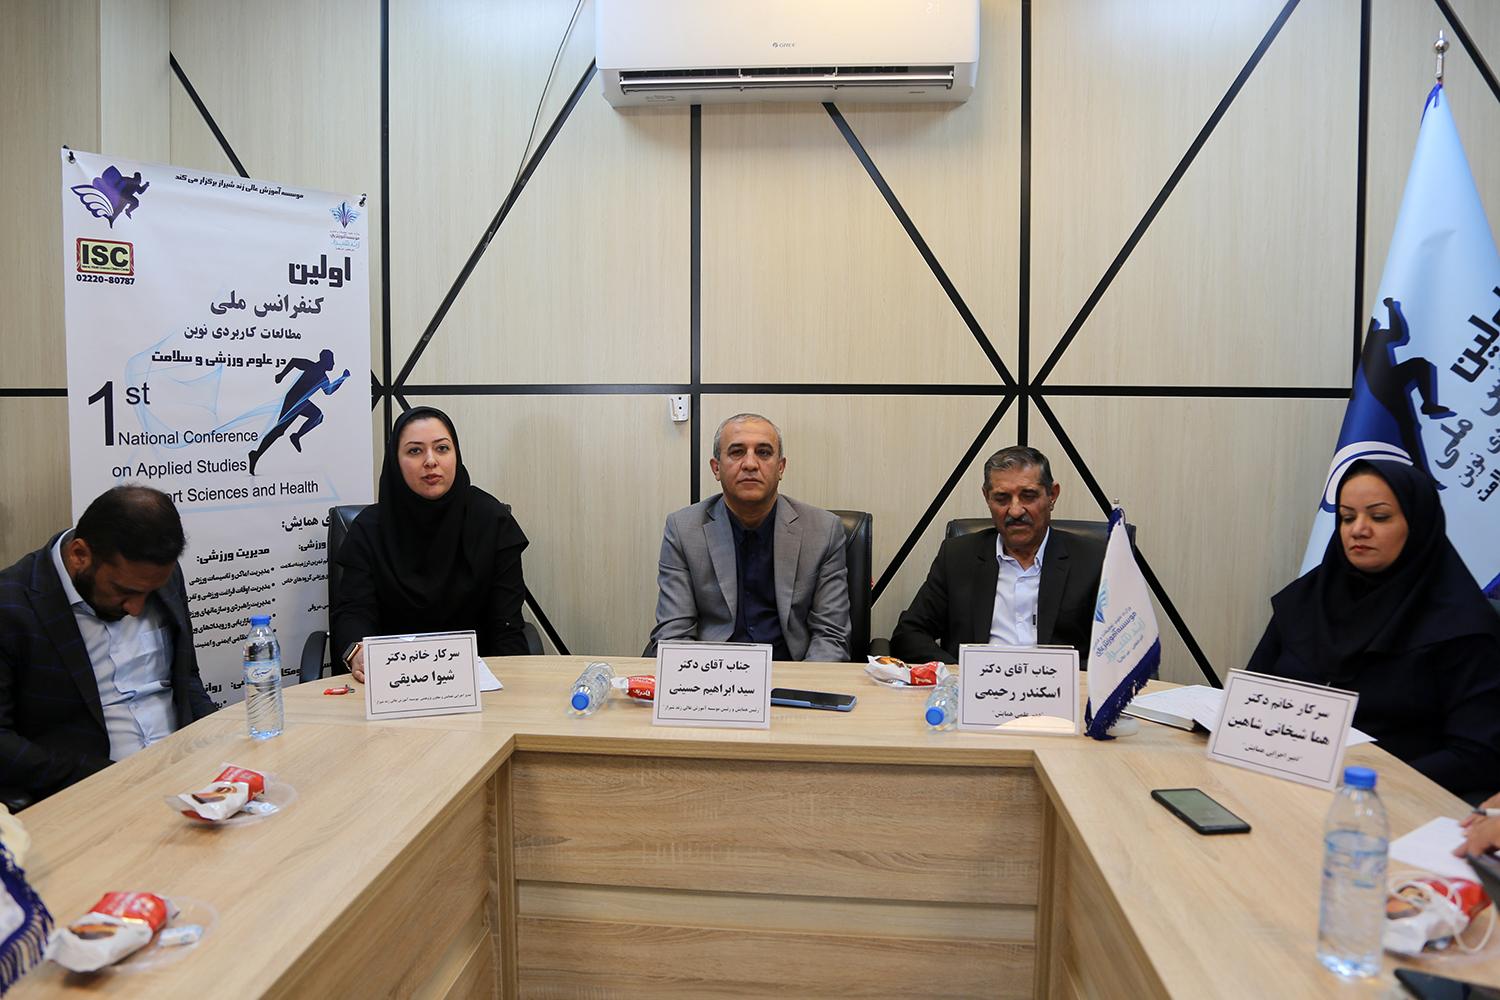 نخستین همایش ملی مطالعات کاربردی نوین در علوم ورزشی و سلامت در شیراز برگزار می شود